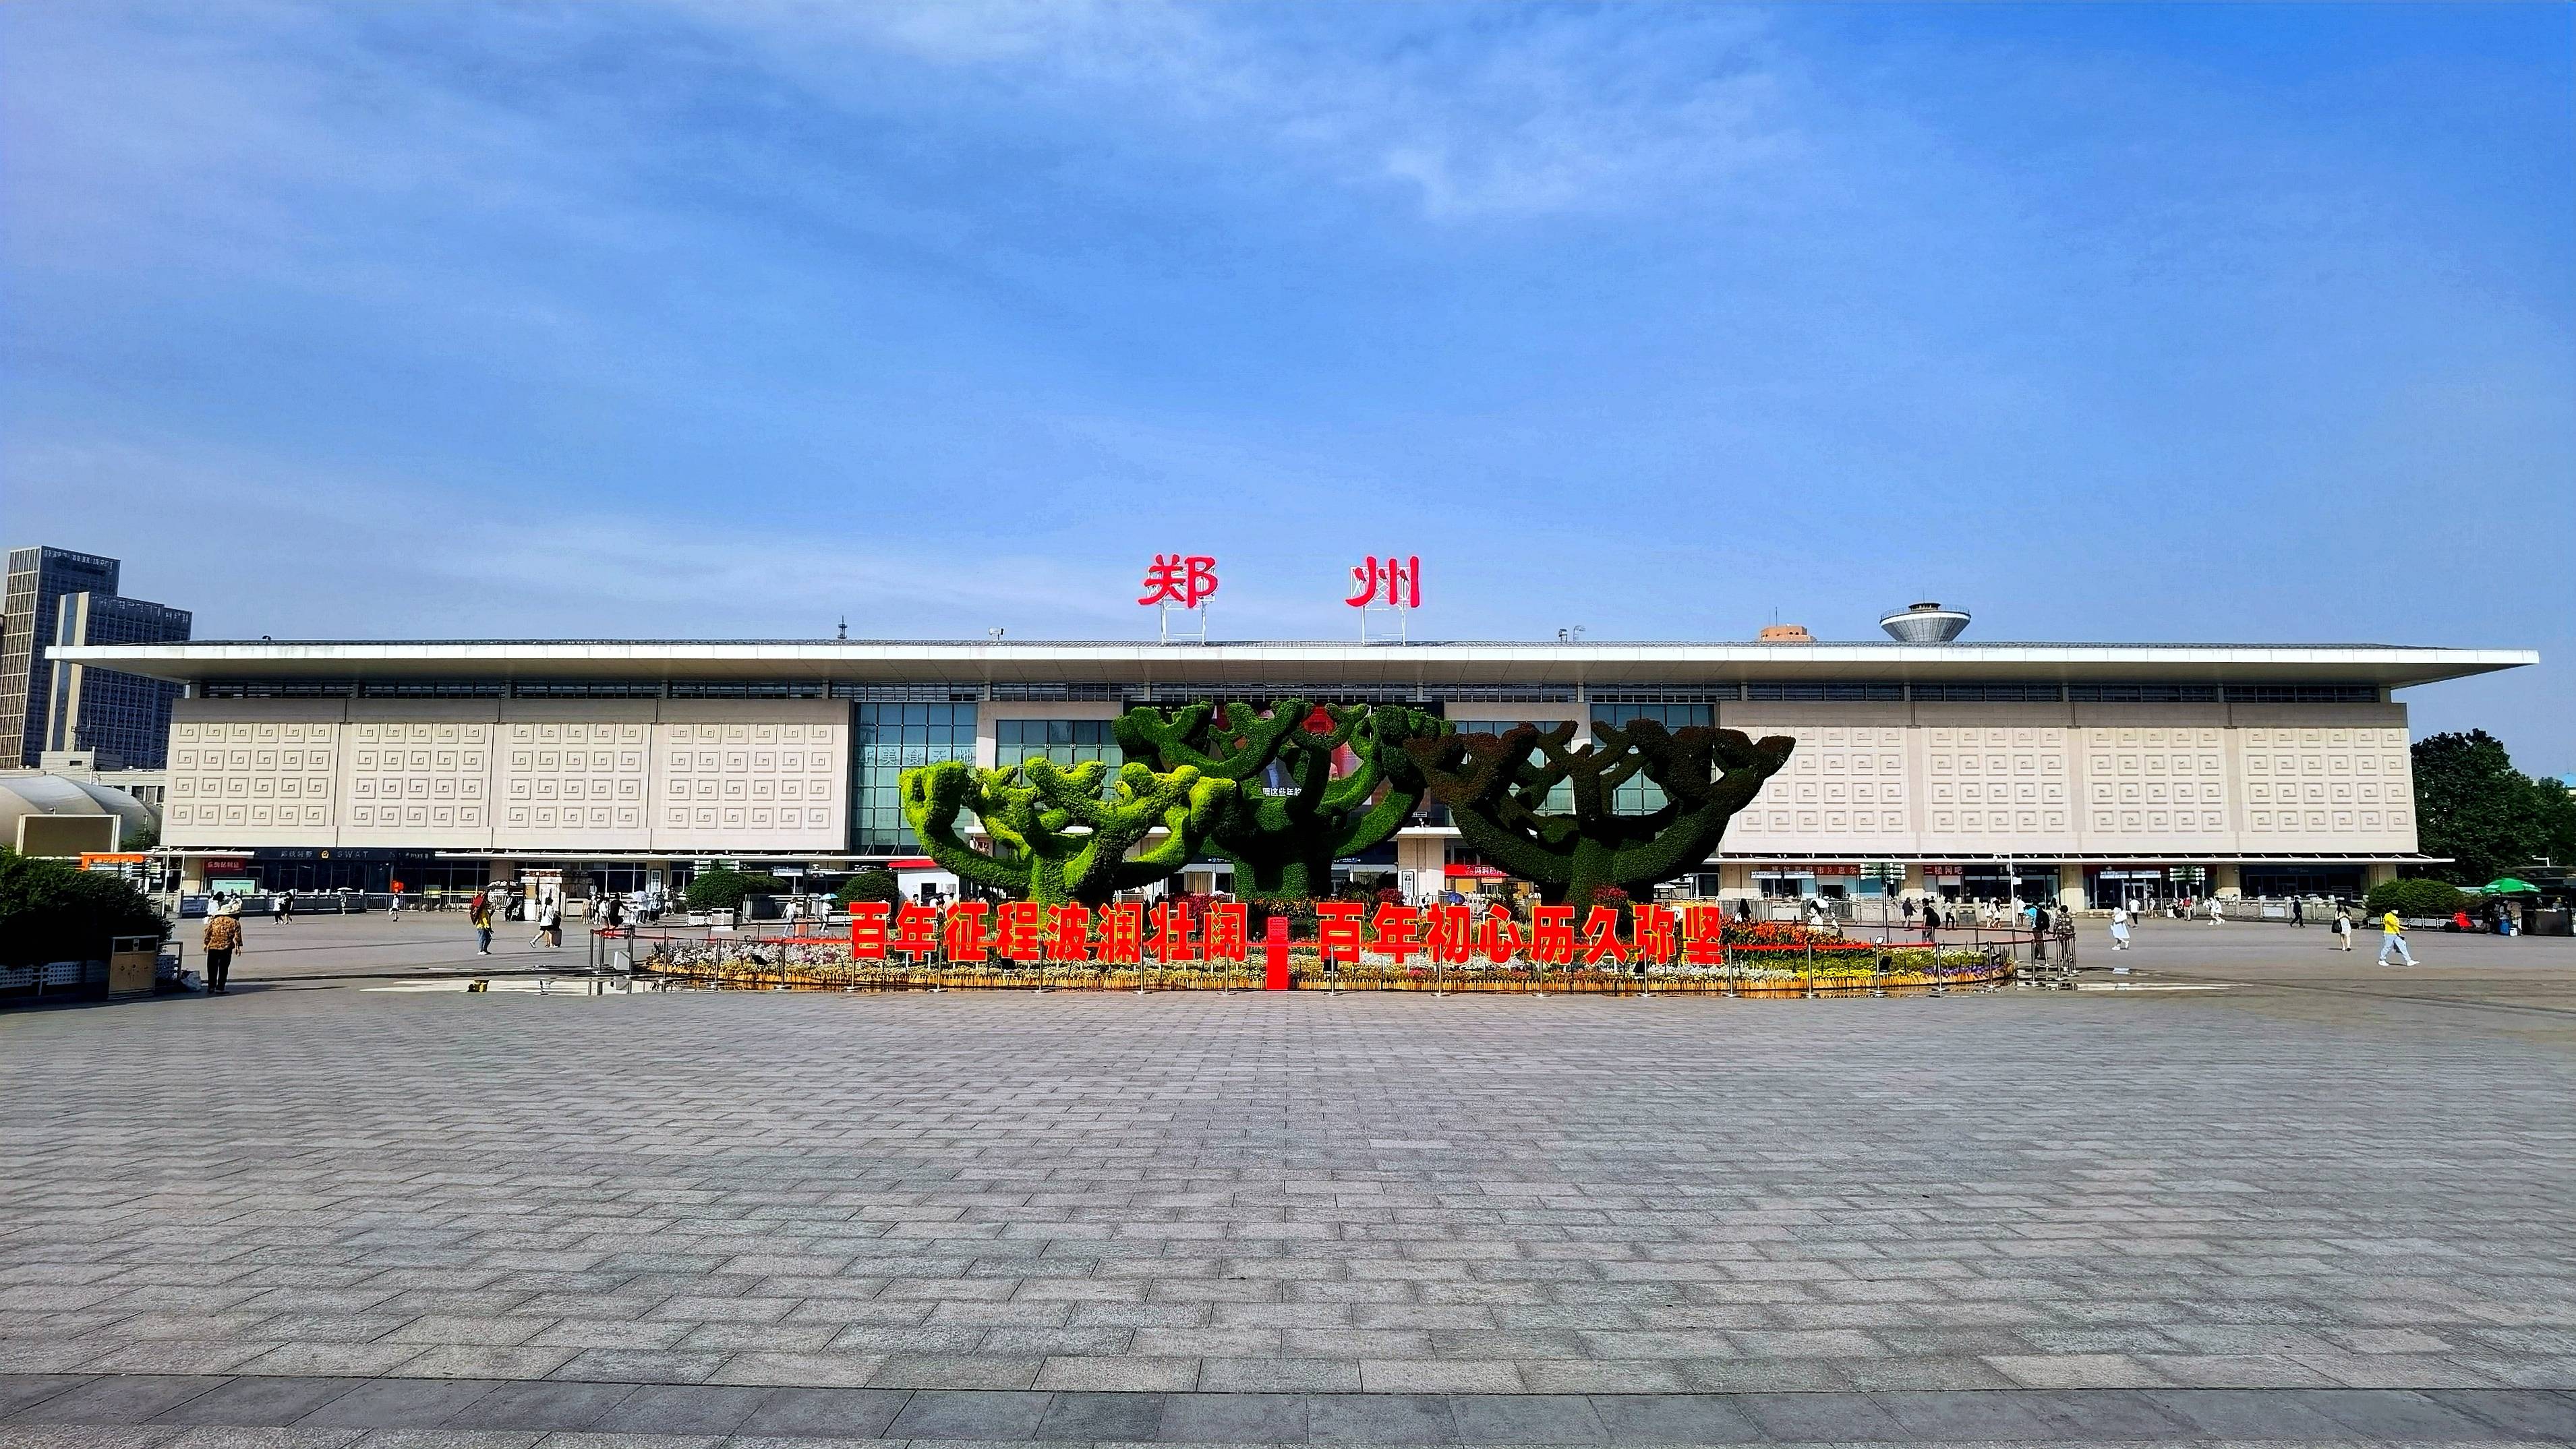 郑州火车站西广场花坛造型寓意繁荣发和谐共生